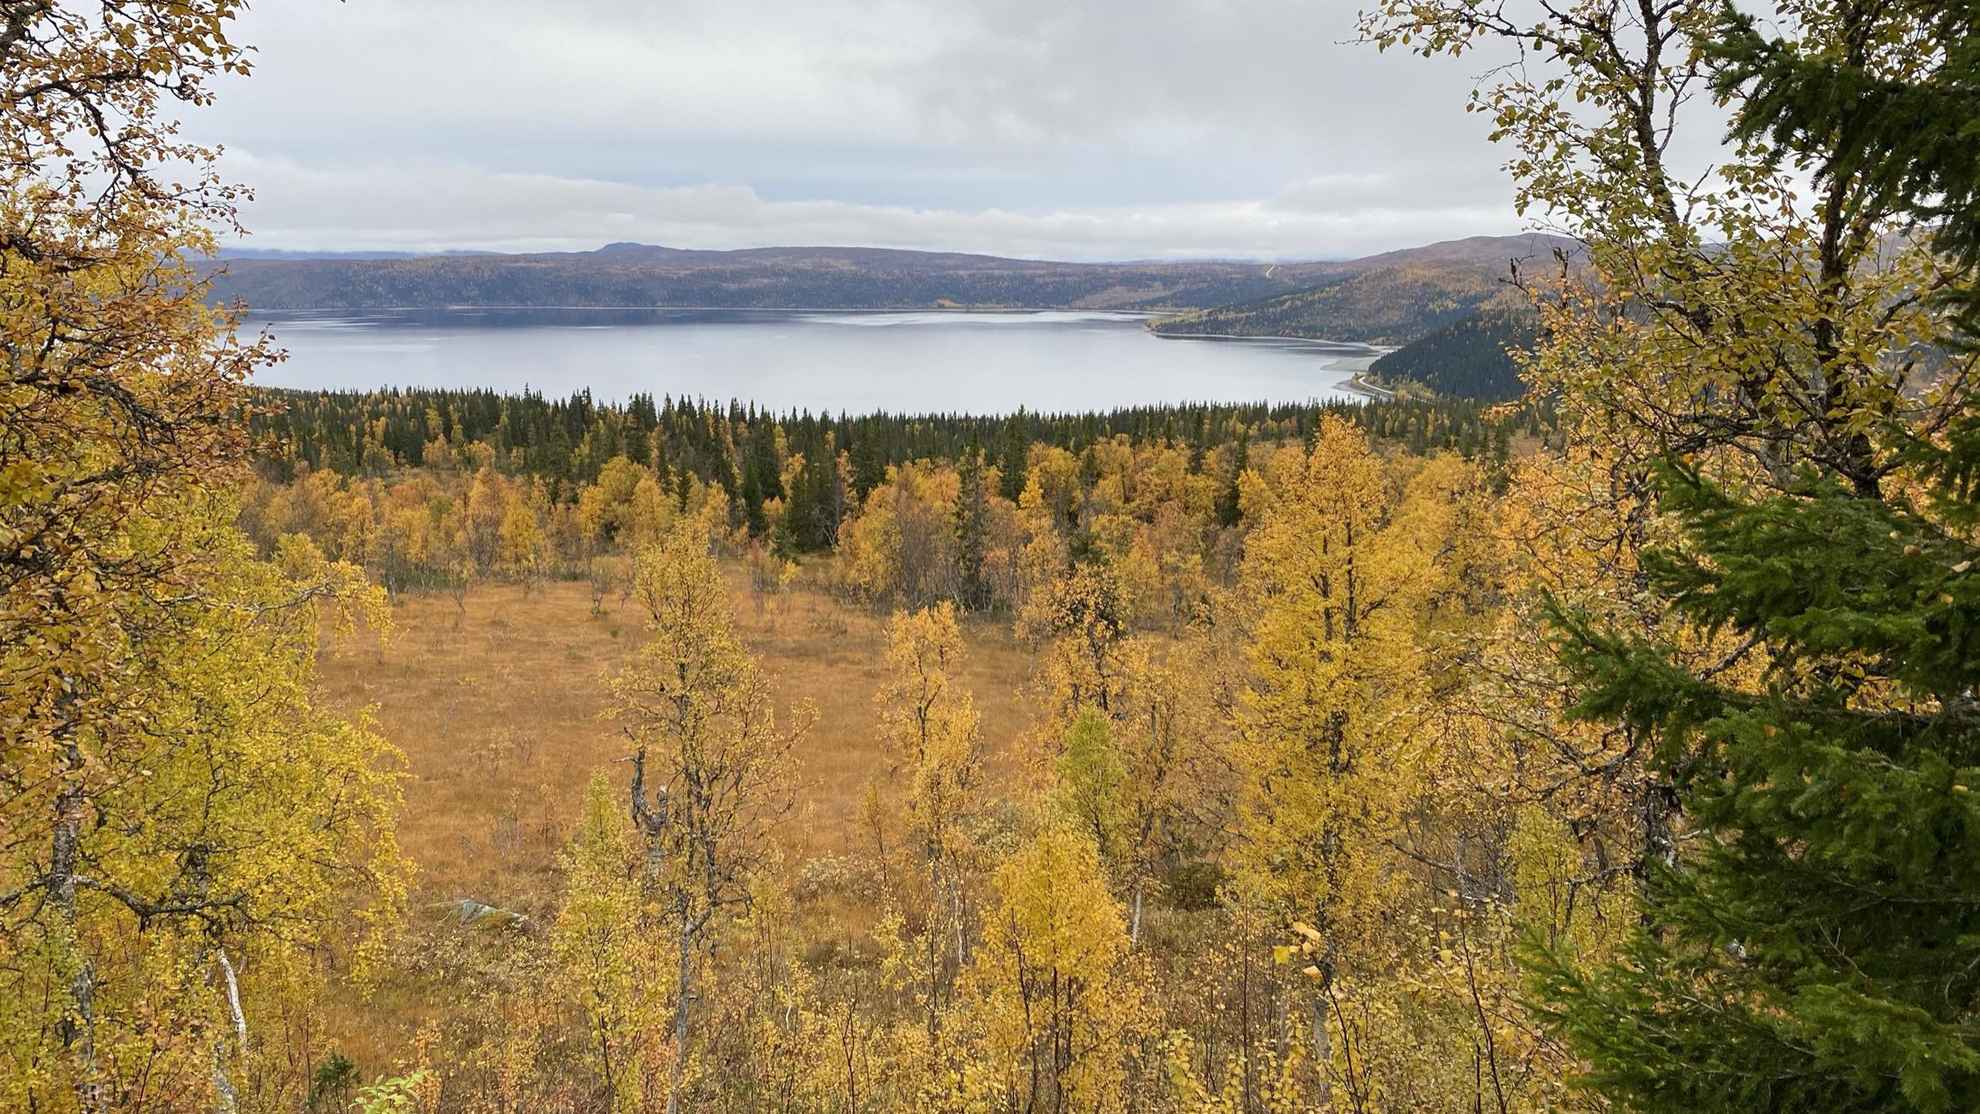 Een meer is omgeven door bergen en bossen. De bomen hebben gele en oranje herfstkleuren.